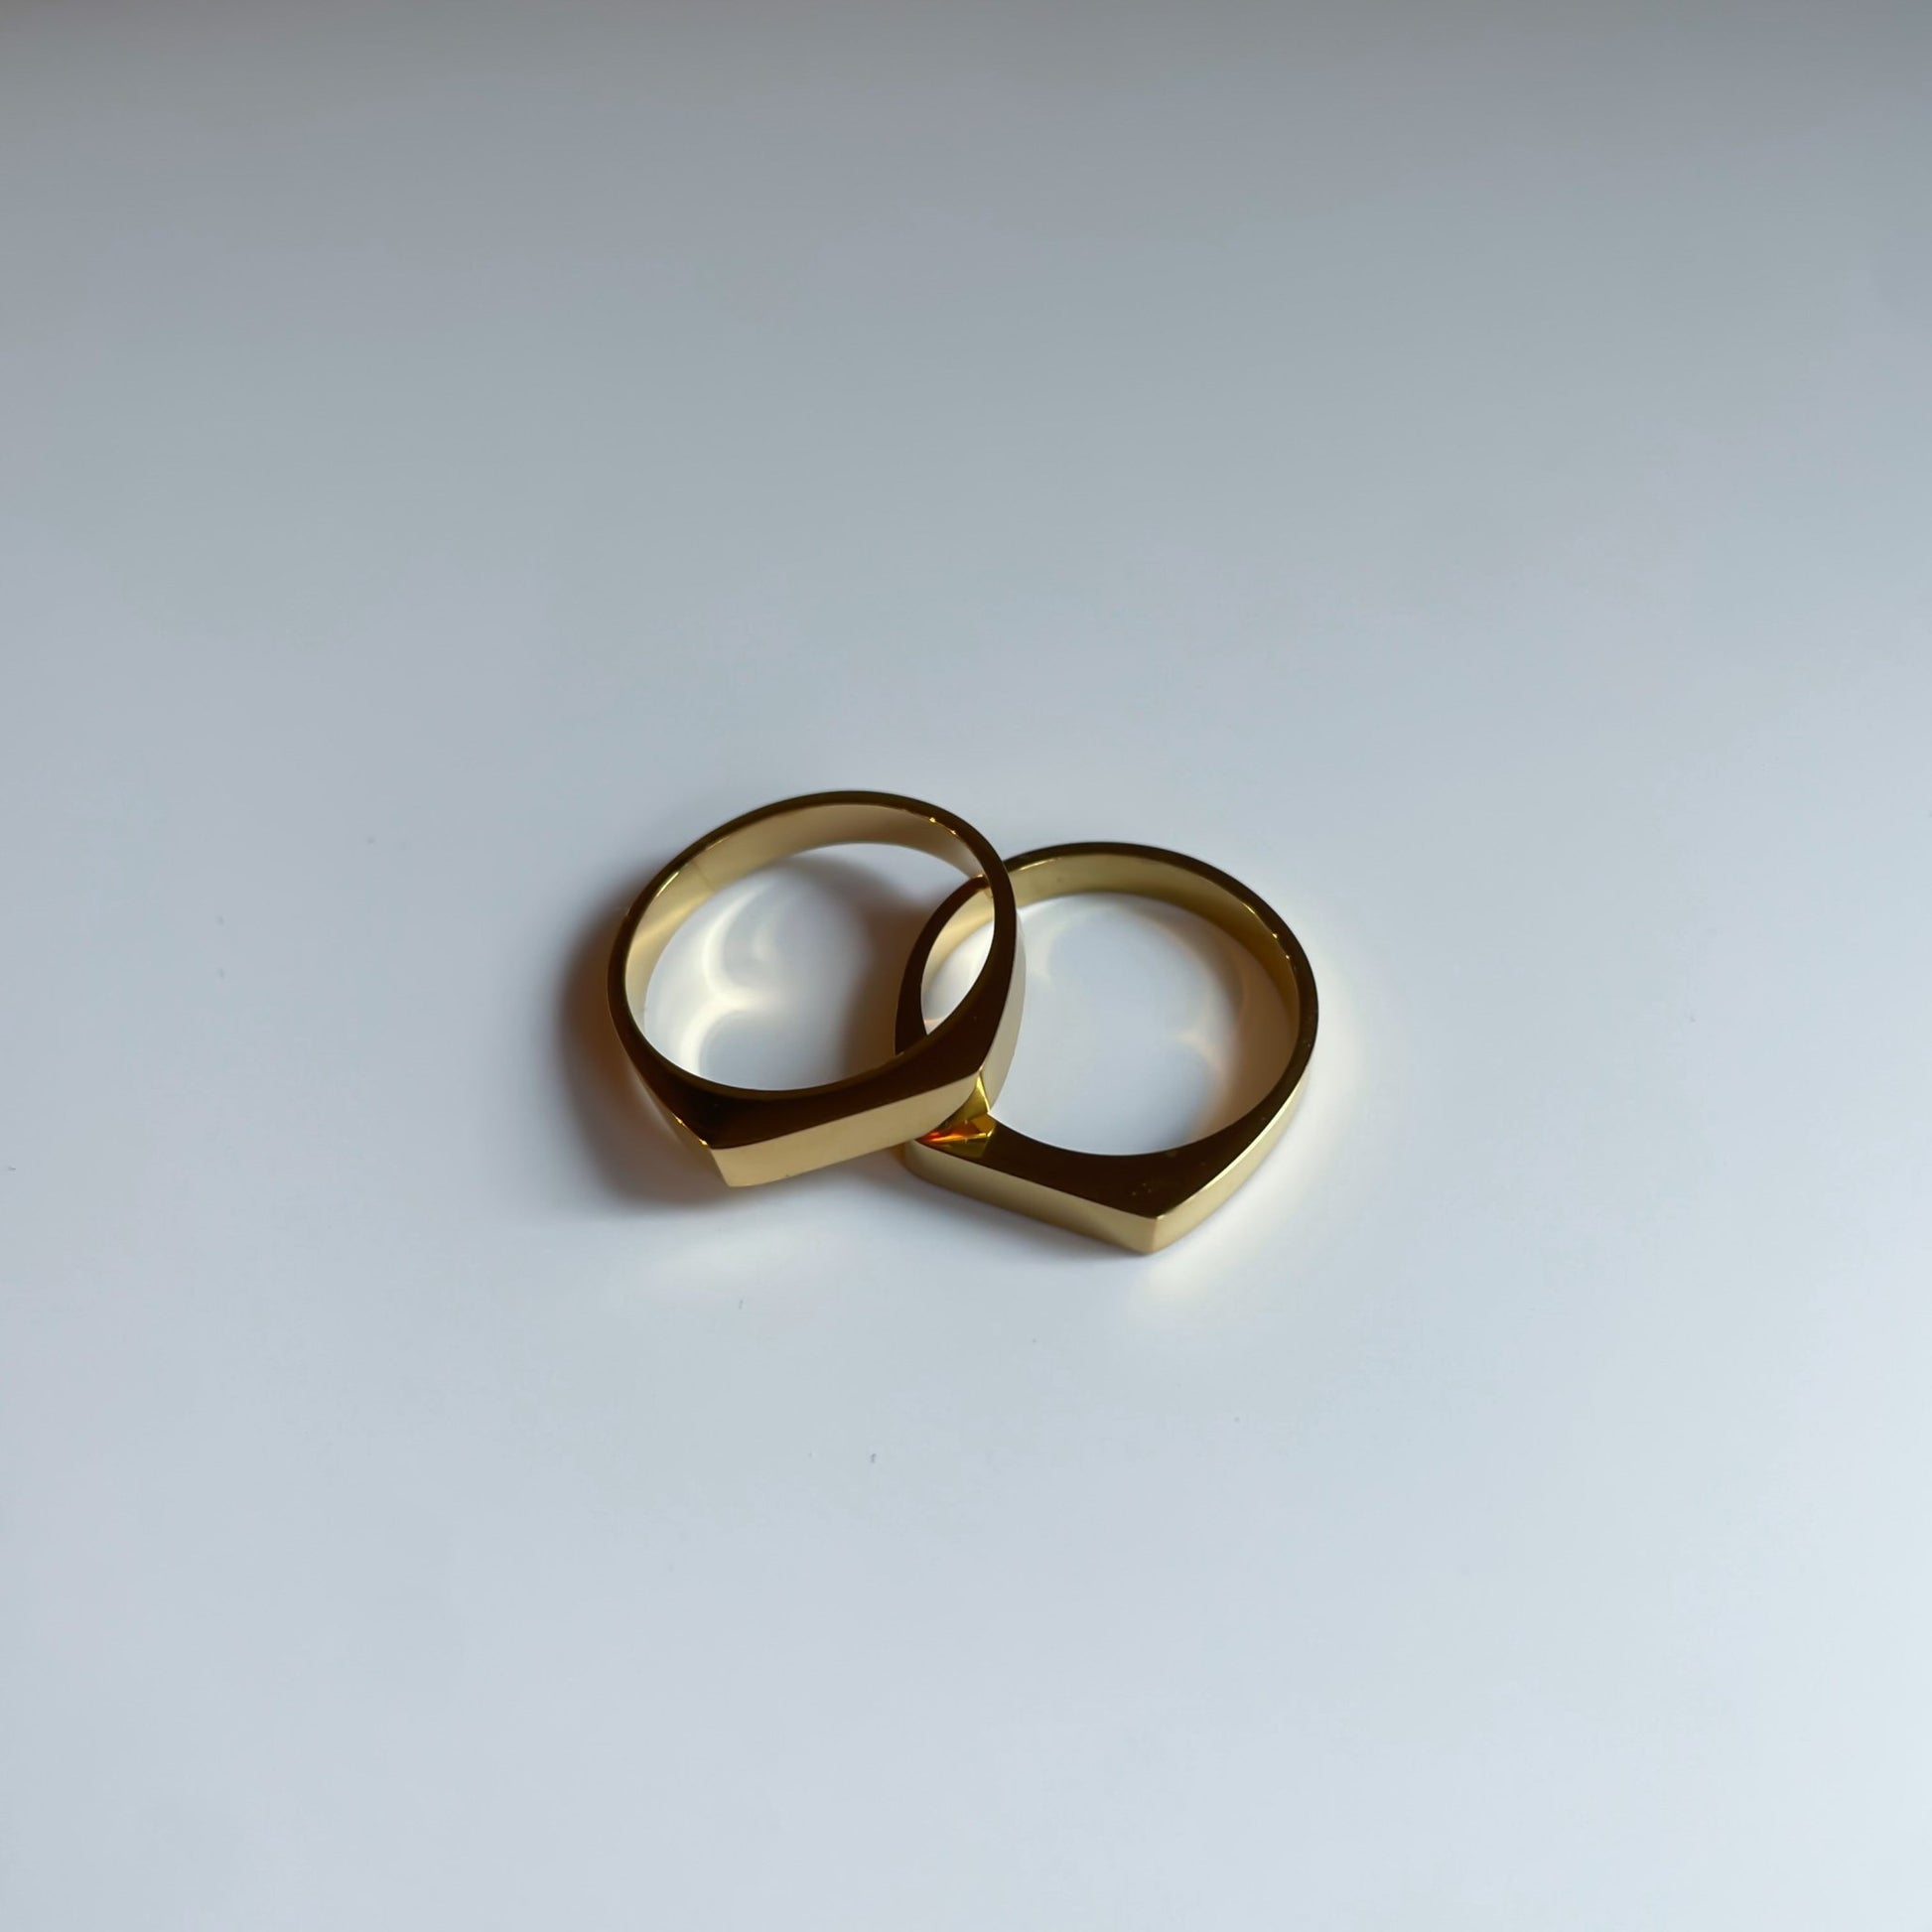 Birth custom ring(２セット) - 𝐇𝐨𝐧𝐞𝐲 𝐁𝐮𝐭𝐭𝐞𝐫 𝐍𝐢𝐧𝐞